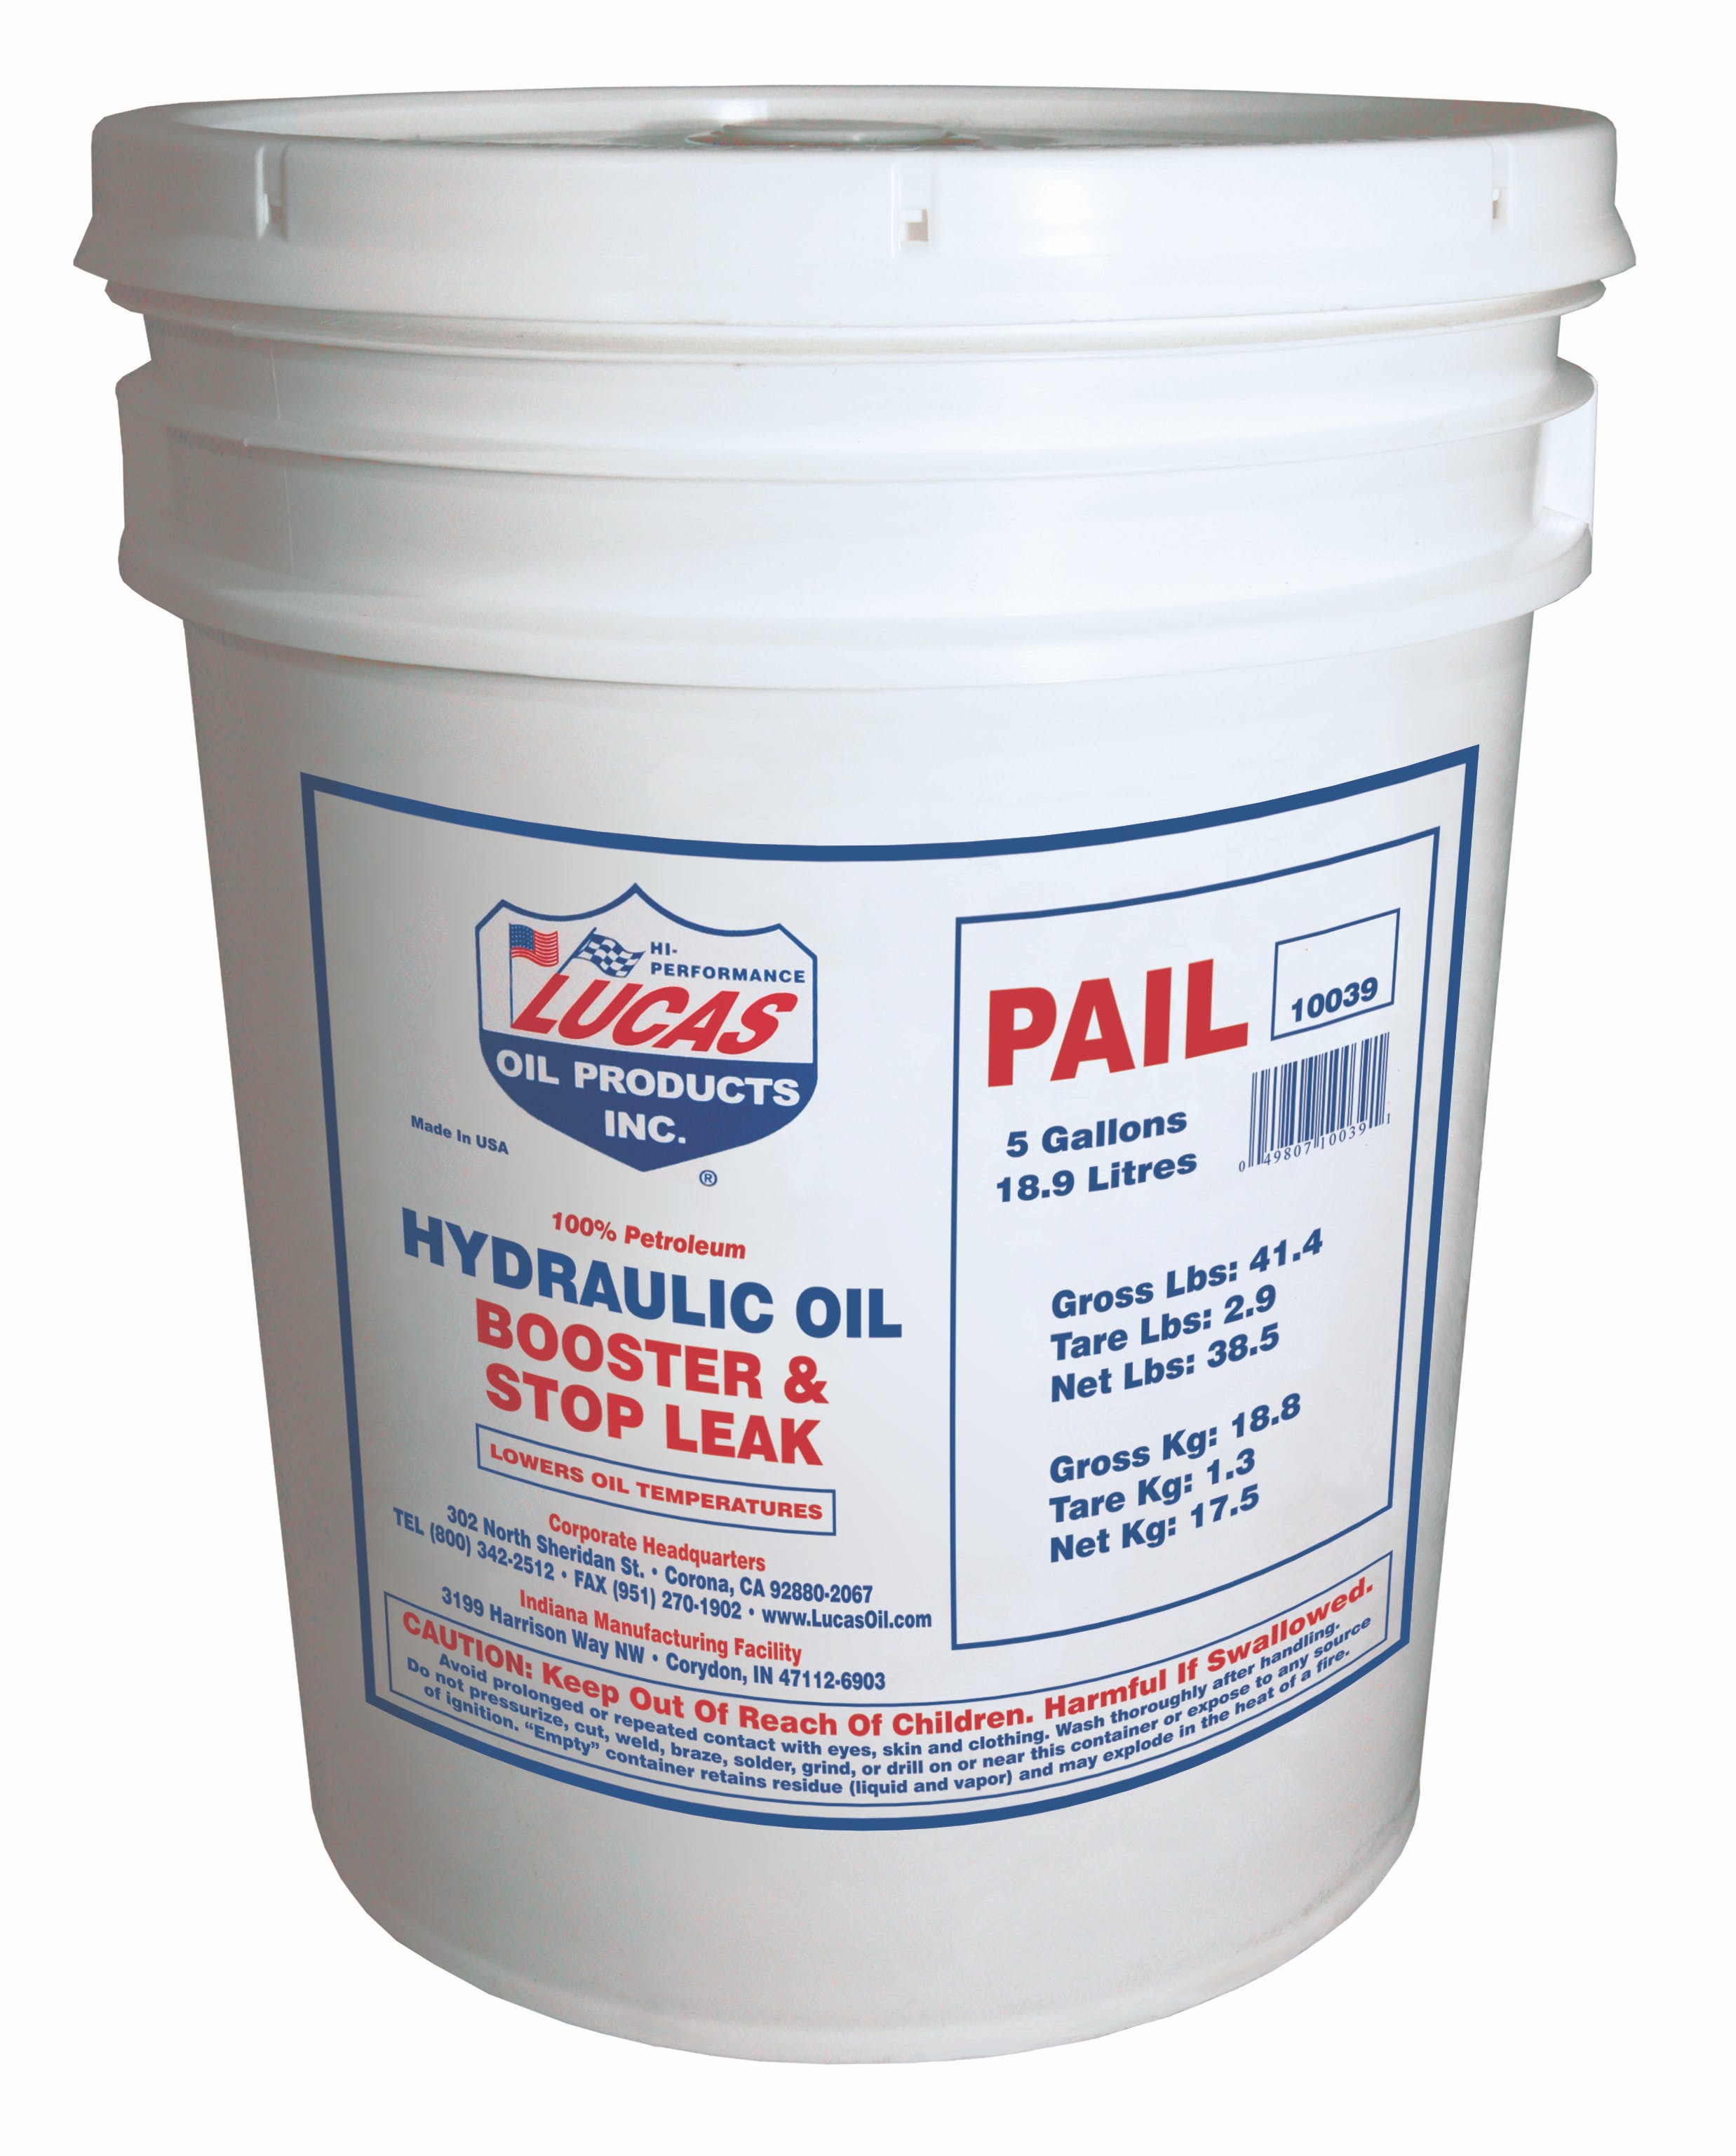 Lucas OIL Hydraulic Oil Booster & Stop Leak 10039